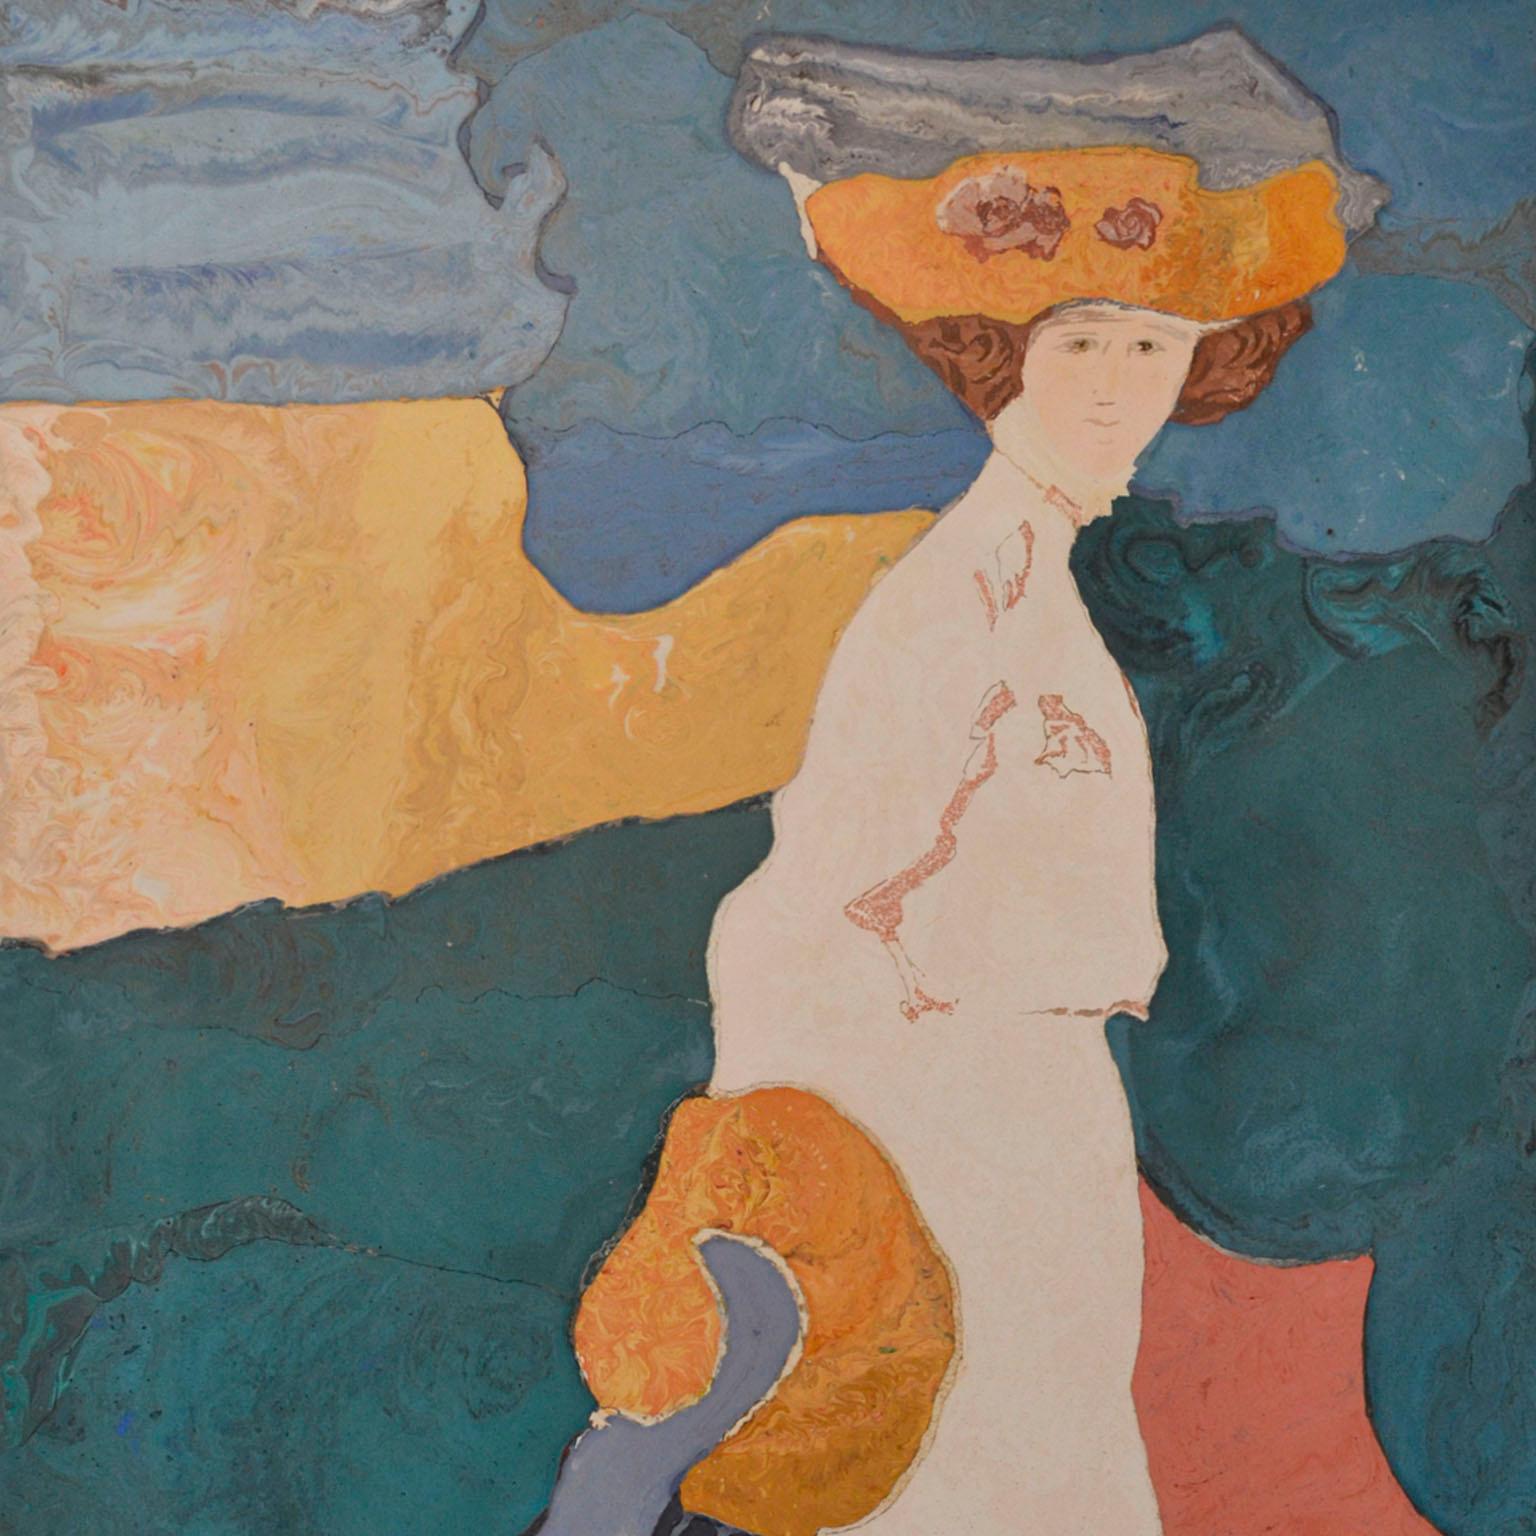 Dans ce panneau mural réalisé à la main par Cupioli Lodovico, l'artiste  a voulu rendre hommage à Wassily Kandinsky, en réinterprétant sa peinture avec notre technique d'incrustation scagliola, créant un jeu de couleurs et de vibrations en utilisant